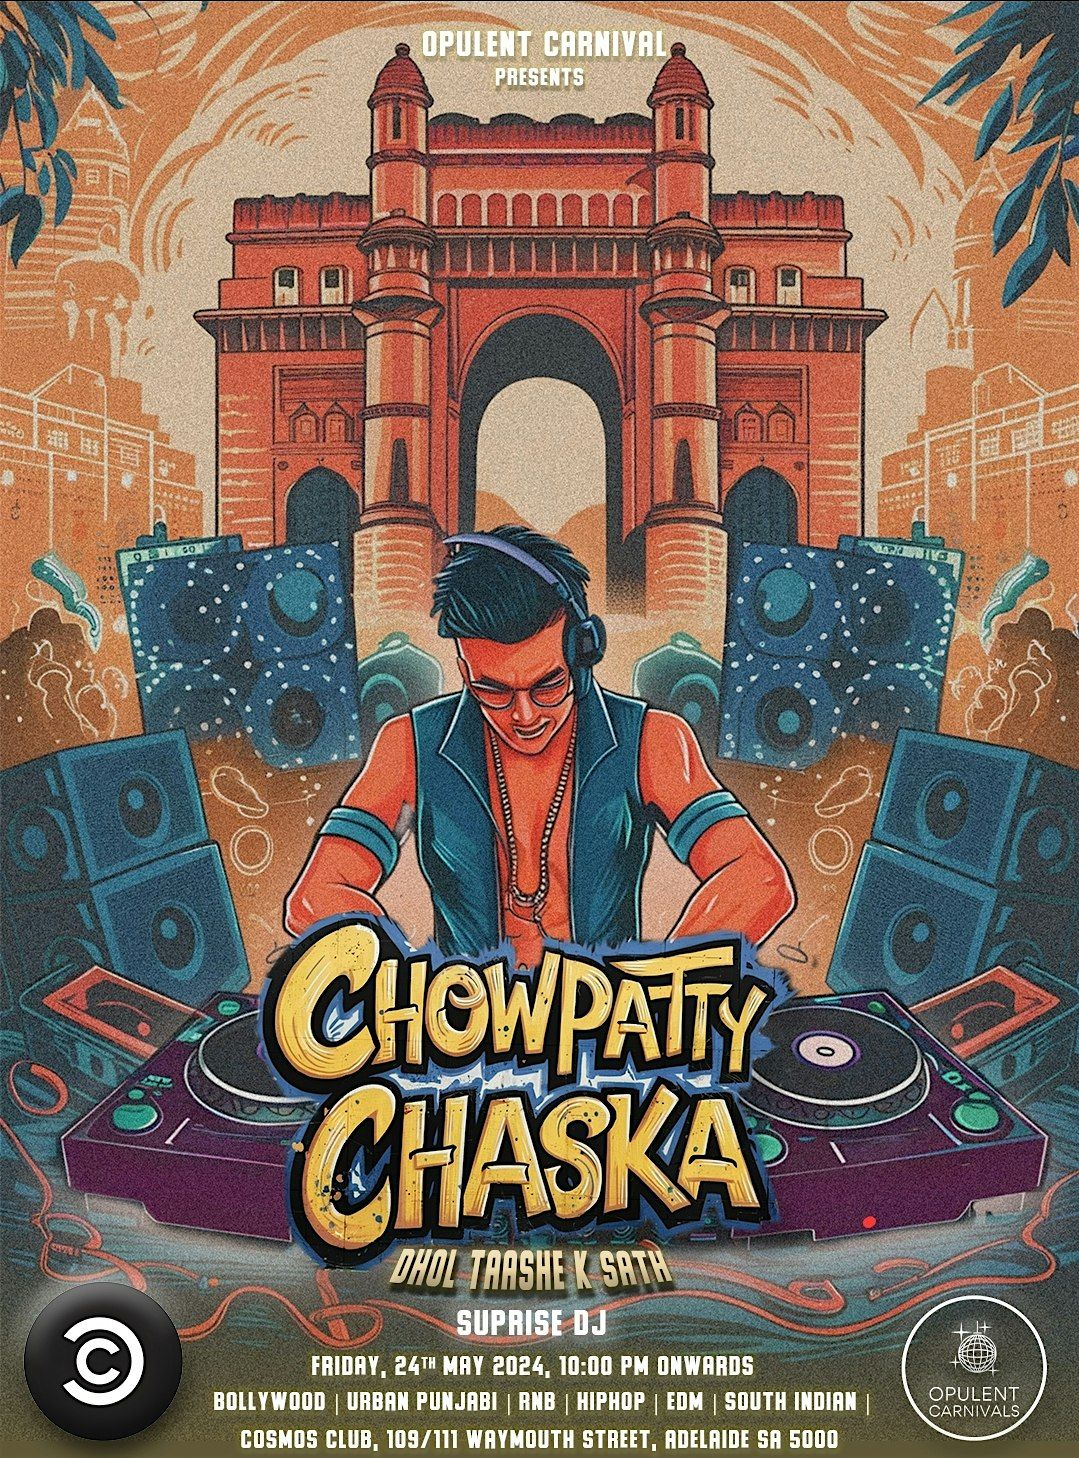 CHOWPATTY CHASKA - Dhol Tashe K Sath